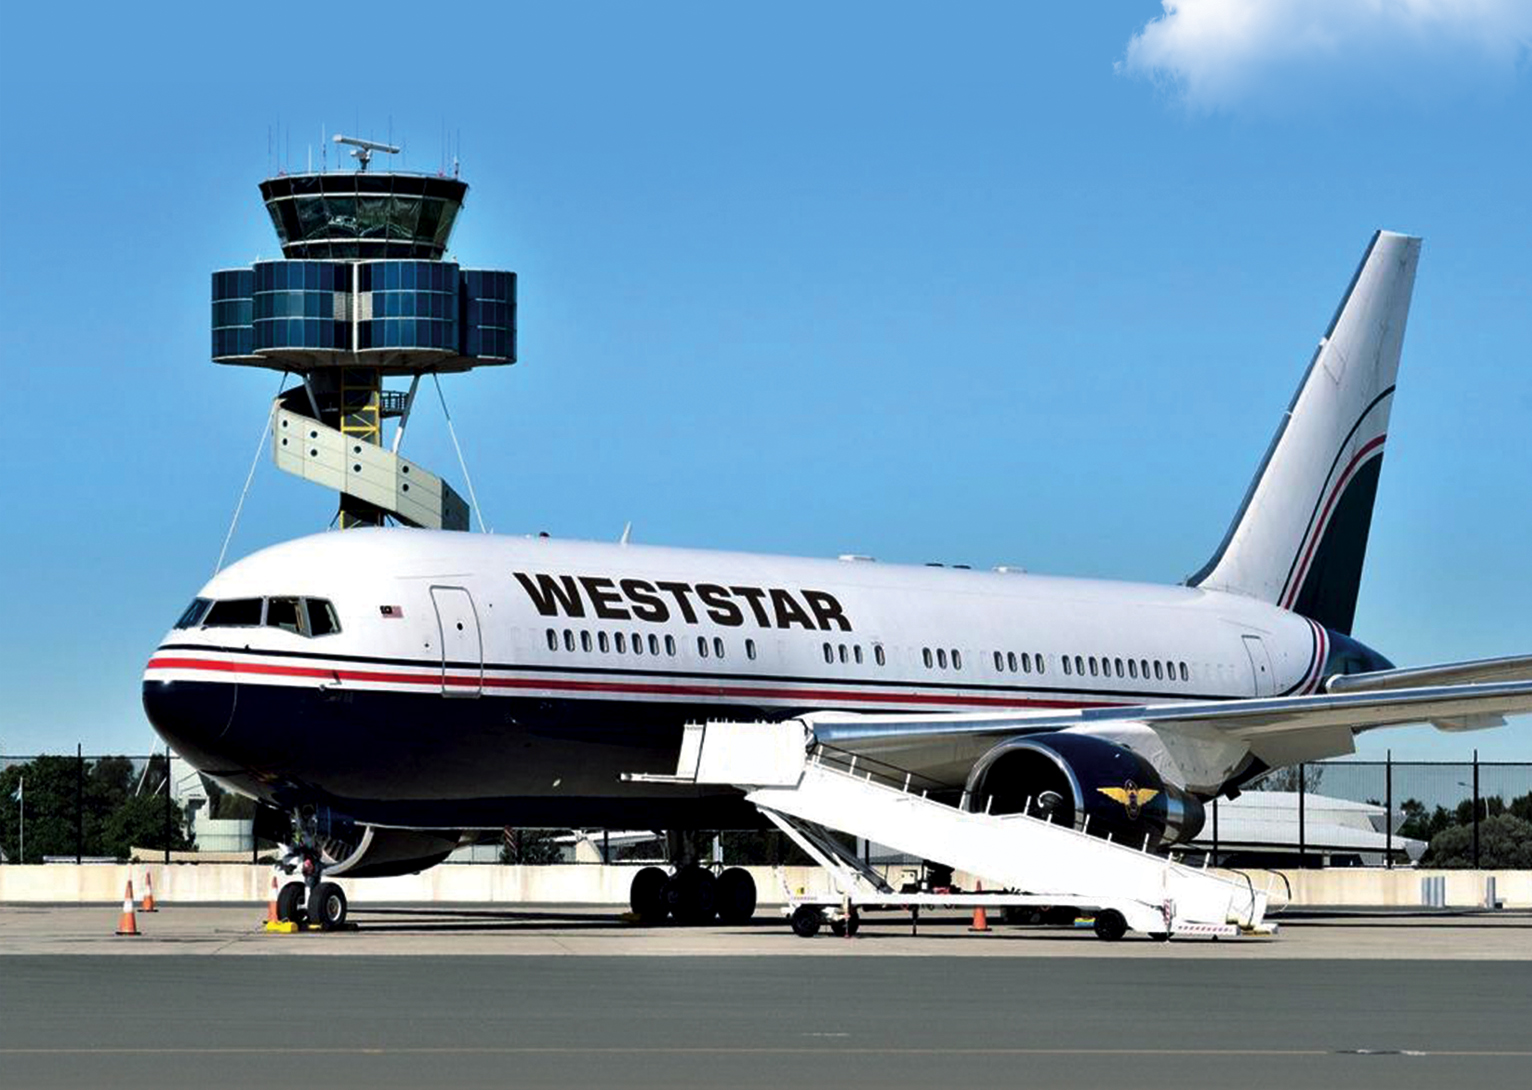 Weststar General Aviation